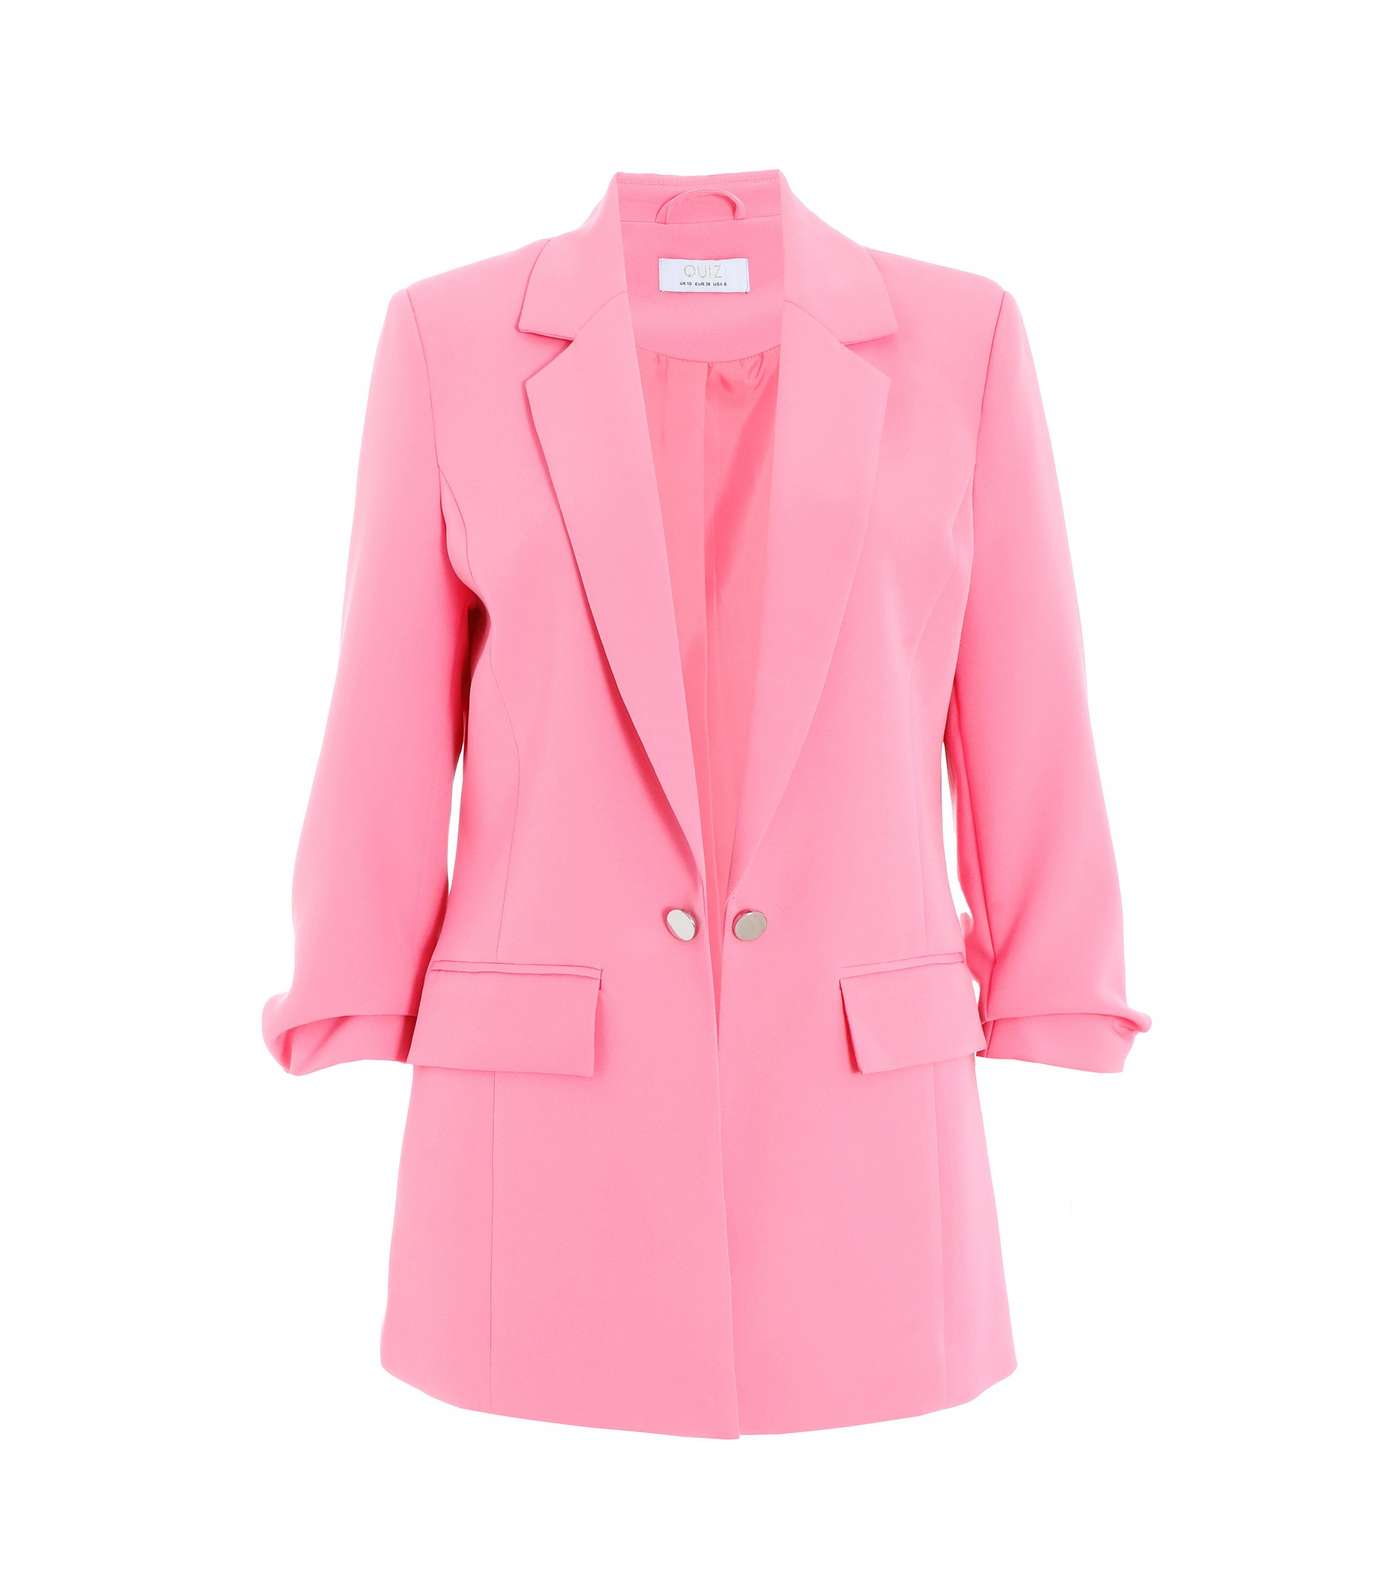 QUIZ Bright Pink Ruched Sleeve Blazer Image 4